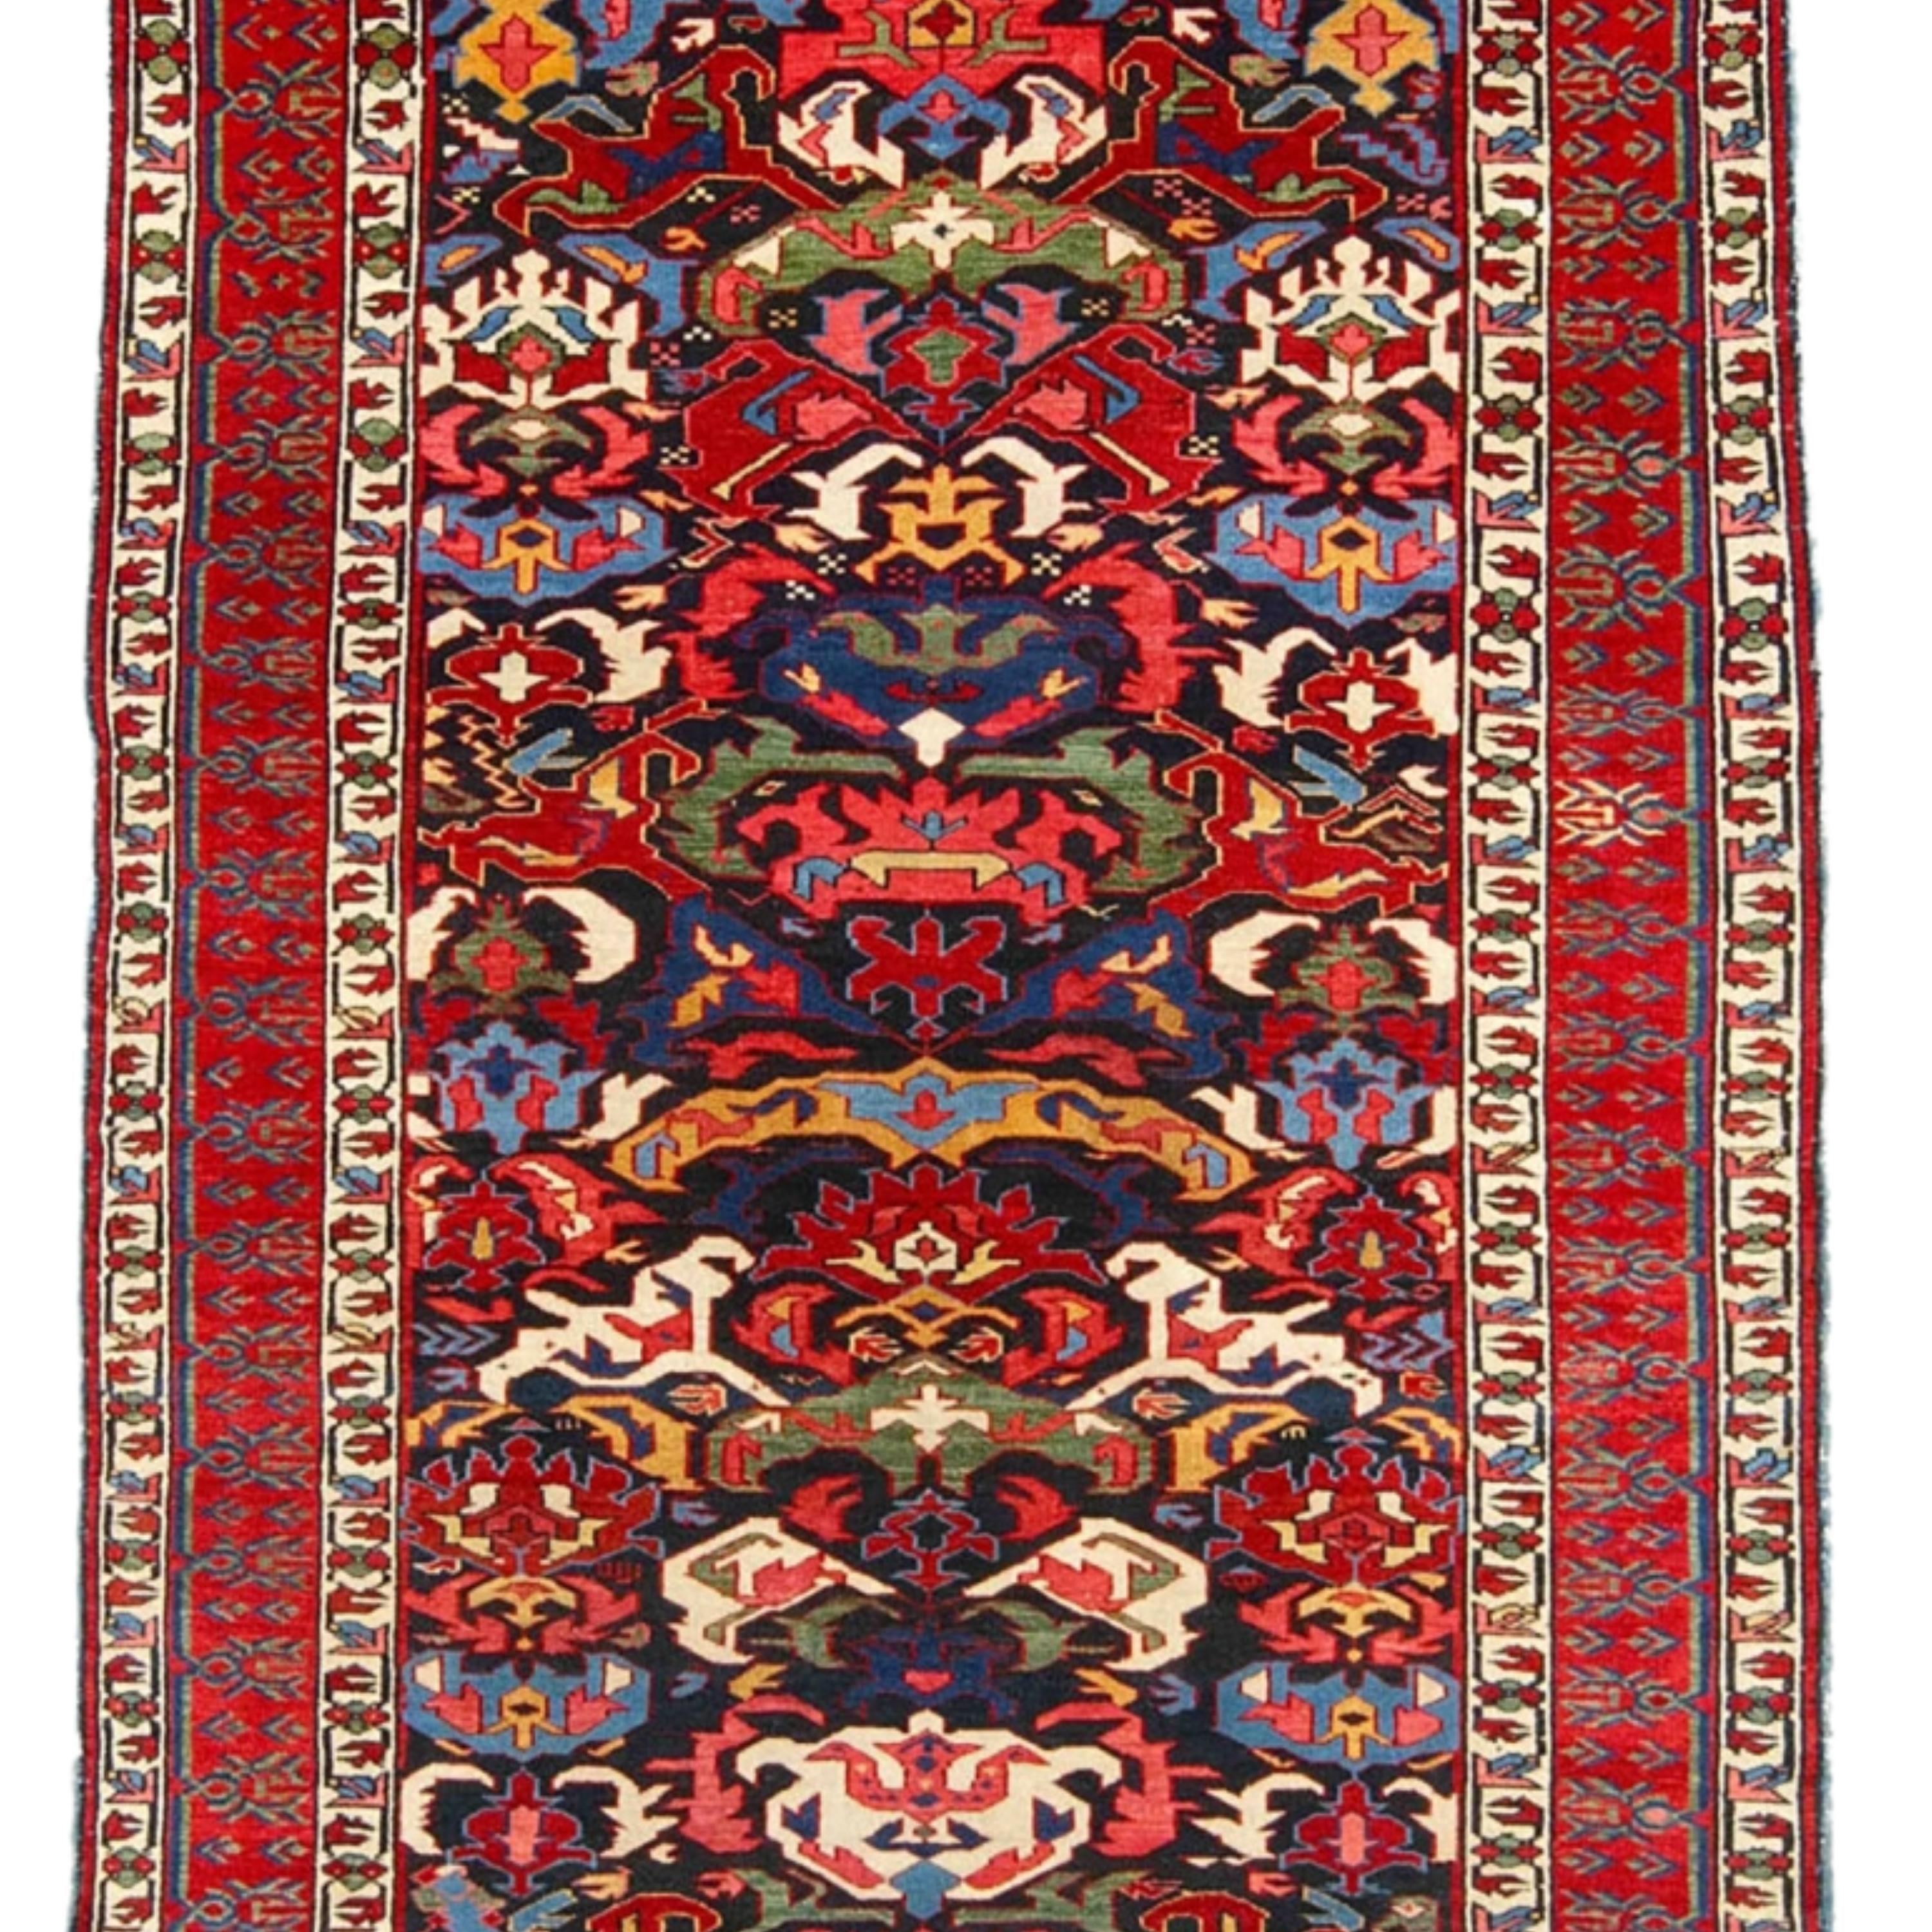 Antique Caucasian Bidjov Rug - Mid-19th Century Bidjov Rug, Antique Rug In Good Condition For Sale In Sultanahmet, 34